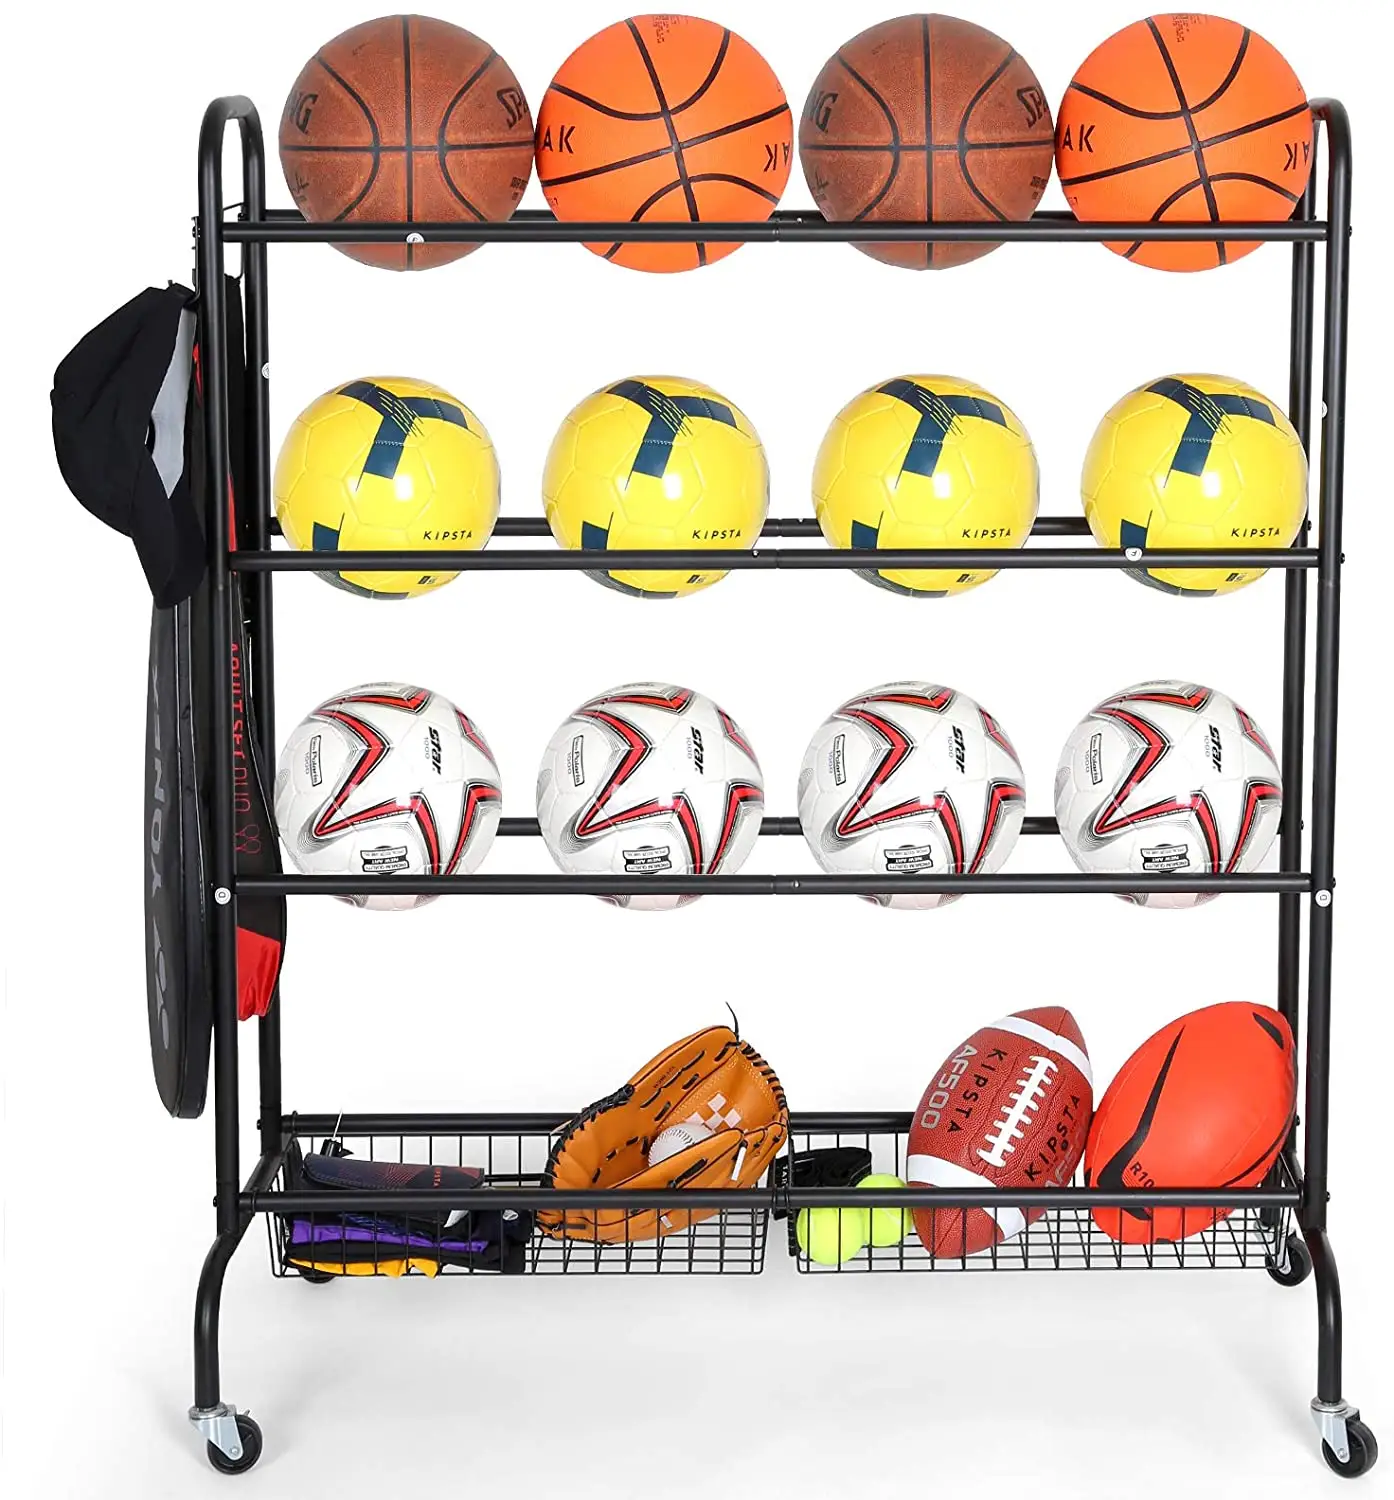 RUIMEI-Almacenamiento de equipo deportivo con ruedas, soporte organizador de 4 niveles con dos cesta para baloncesto, balones de fútbol y voleibol